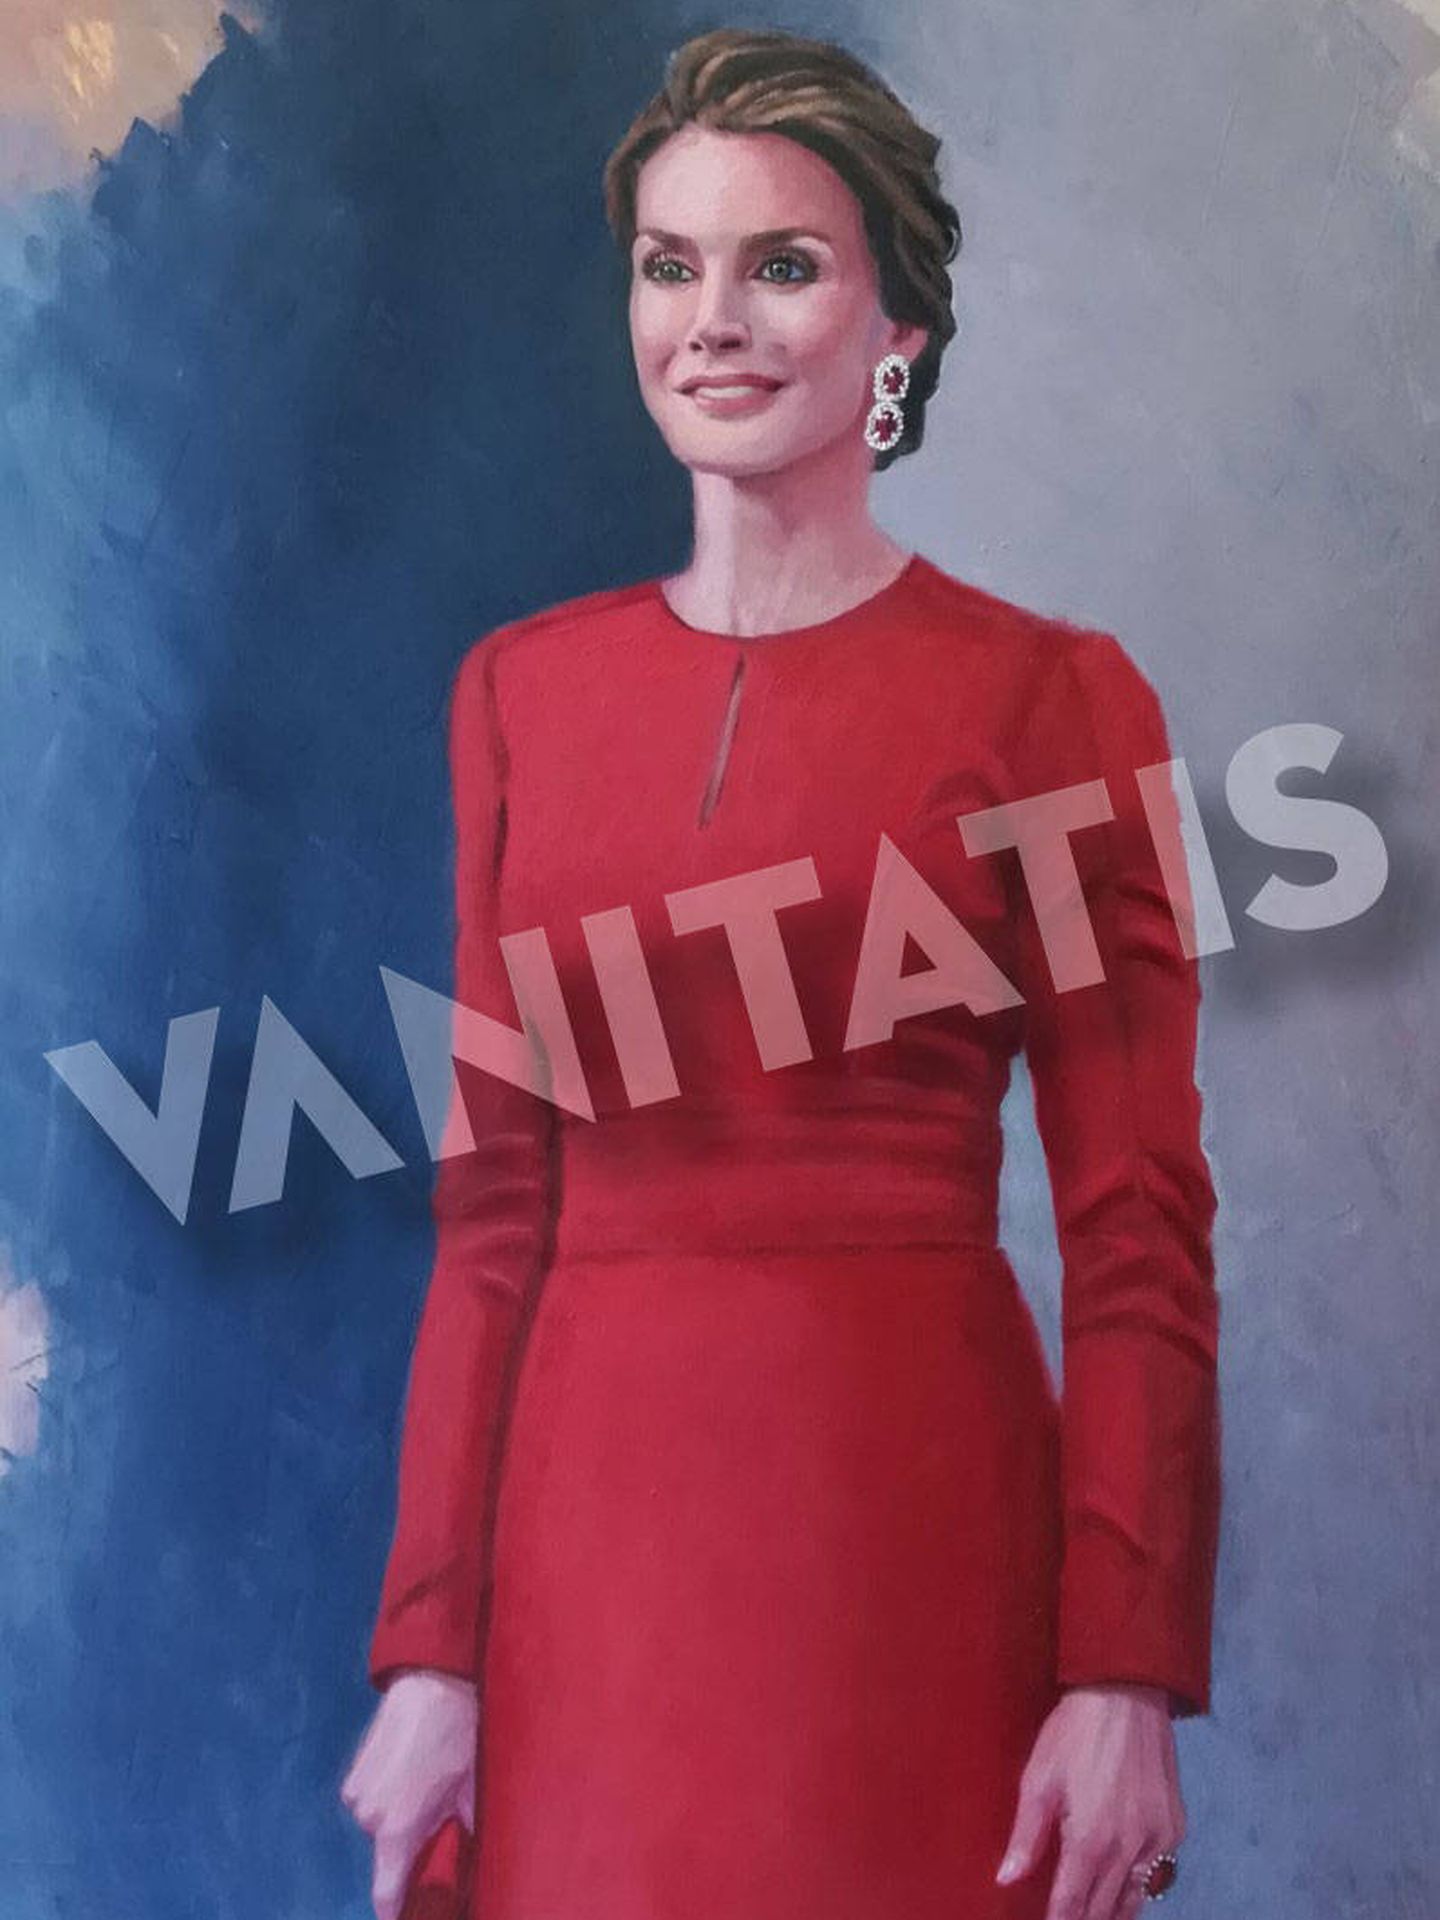 Retrato de la reina Letizia. (Imagen cedida por Marta de Arespacochaga. Prohibida su reproducción)